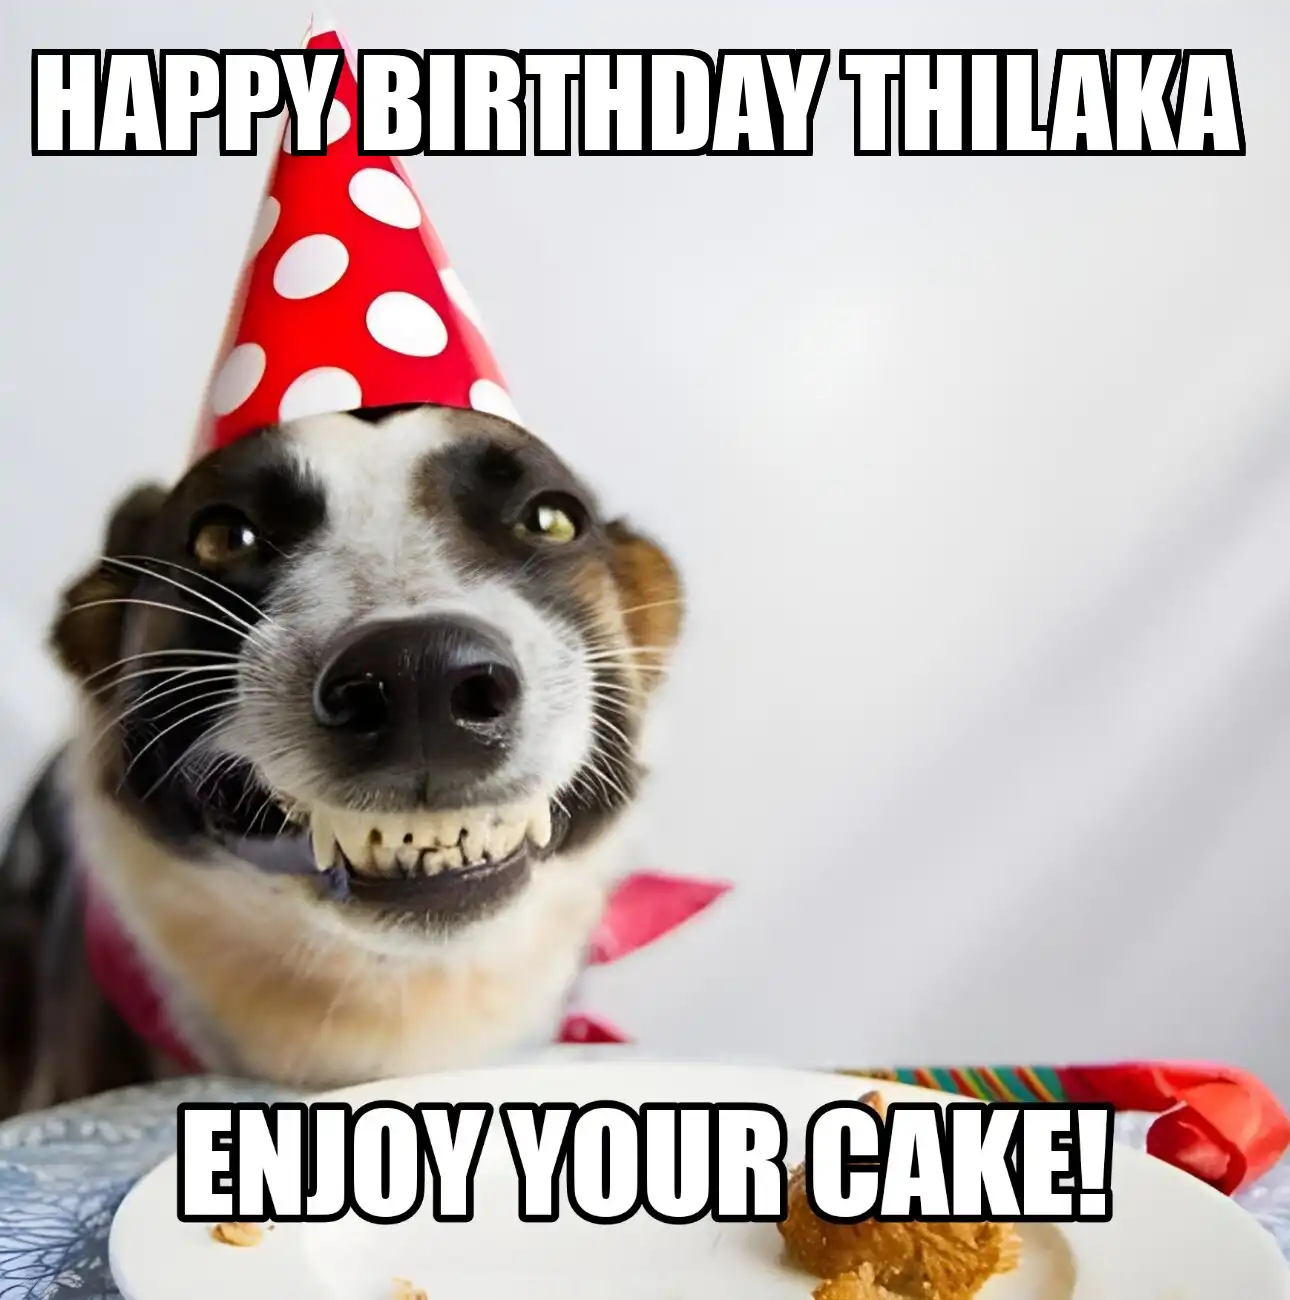 Happy Birthday Thilaka Enjoy Your Cake Dog Meme